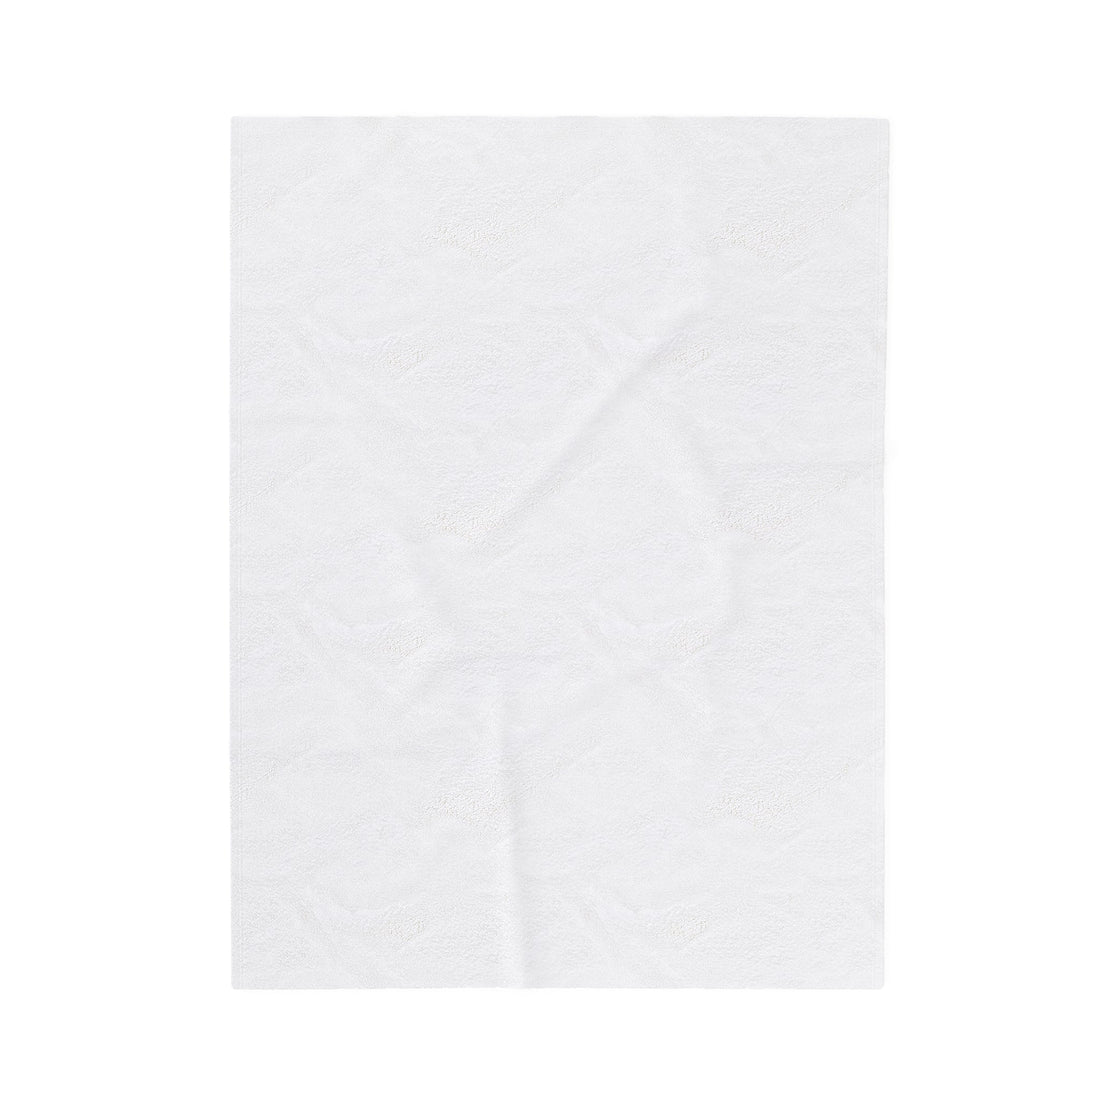 Never Lose Wonder Velveteen Plush Blanket - All Over Prints - Positively Sassy - Never Lose Wonder Velveteen Plush Blanket